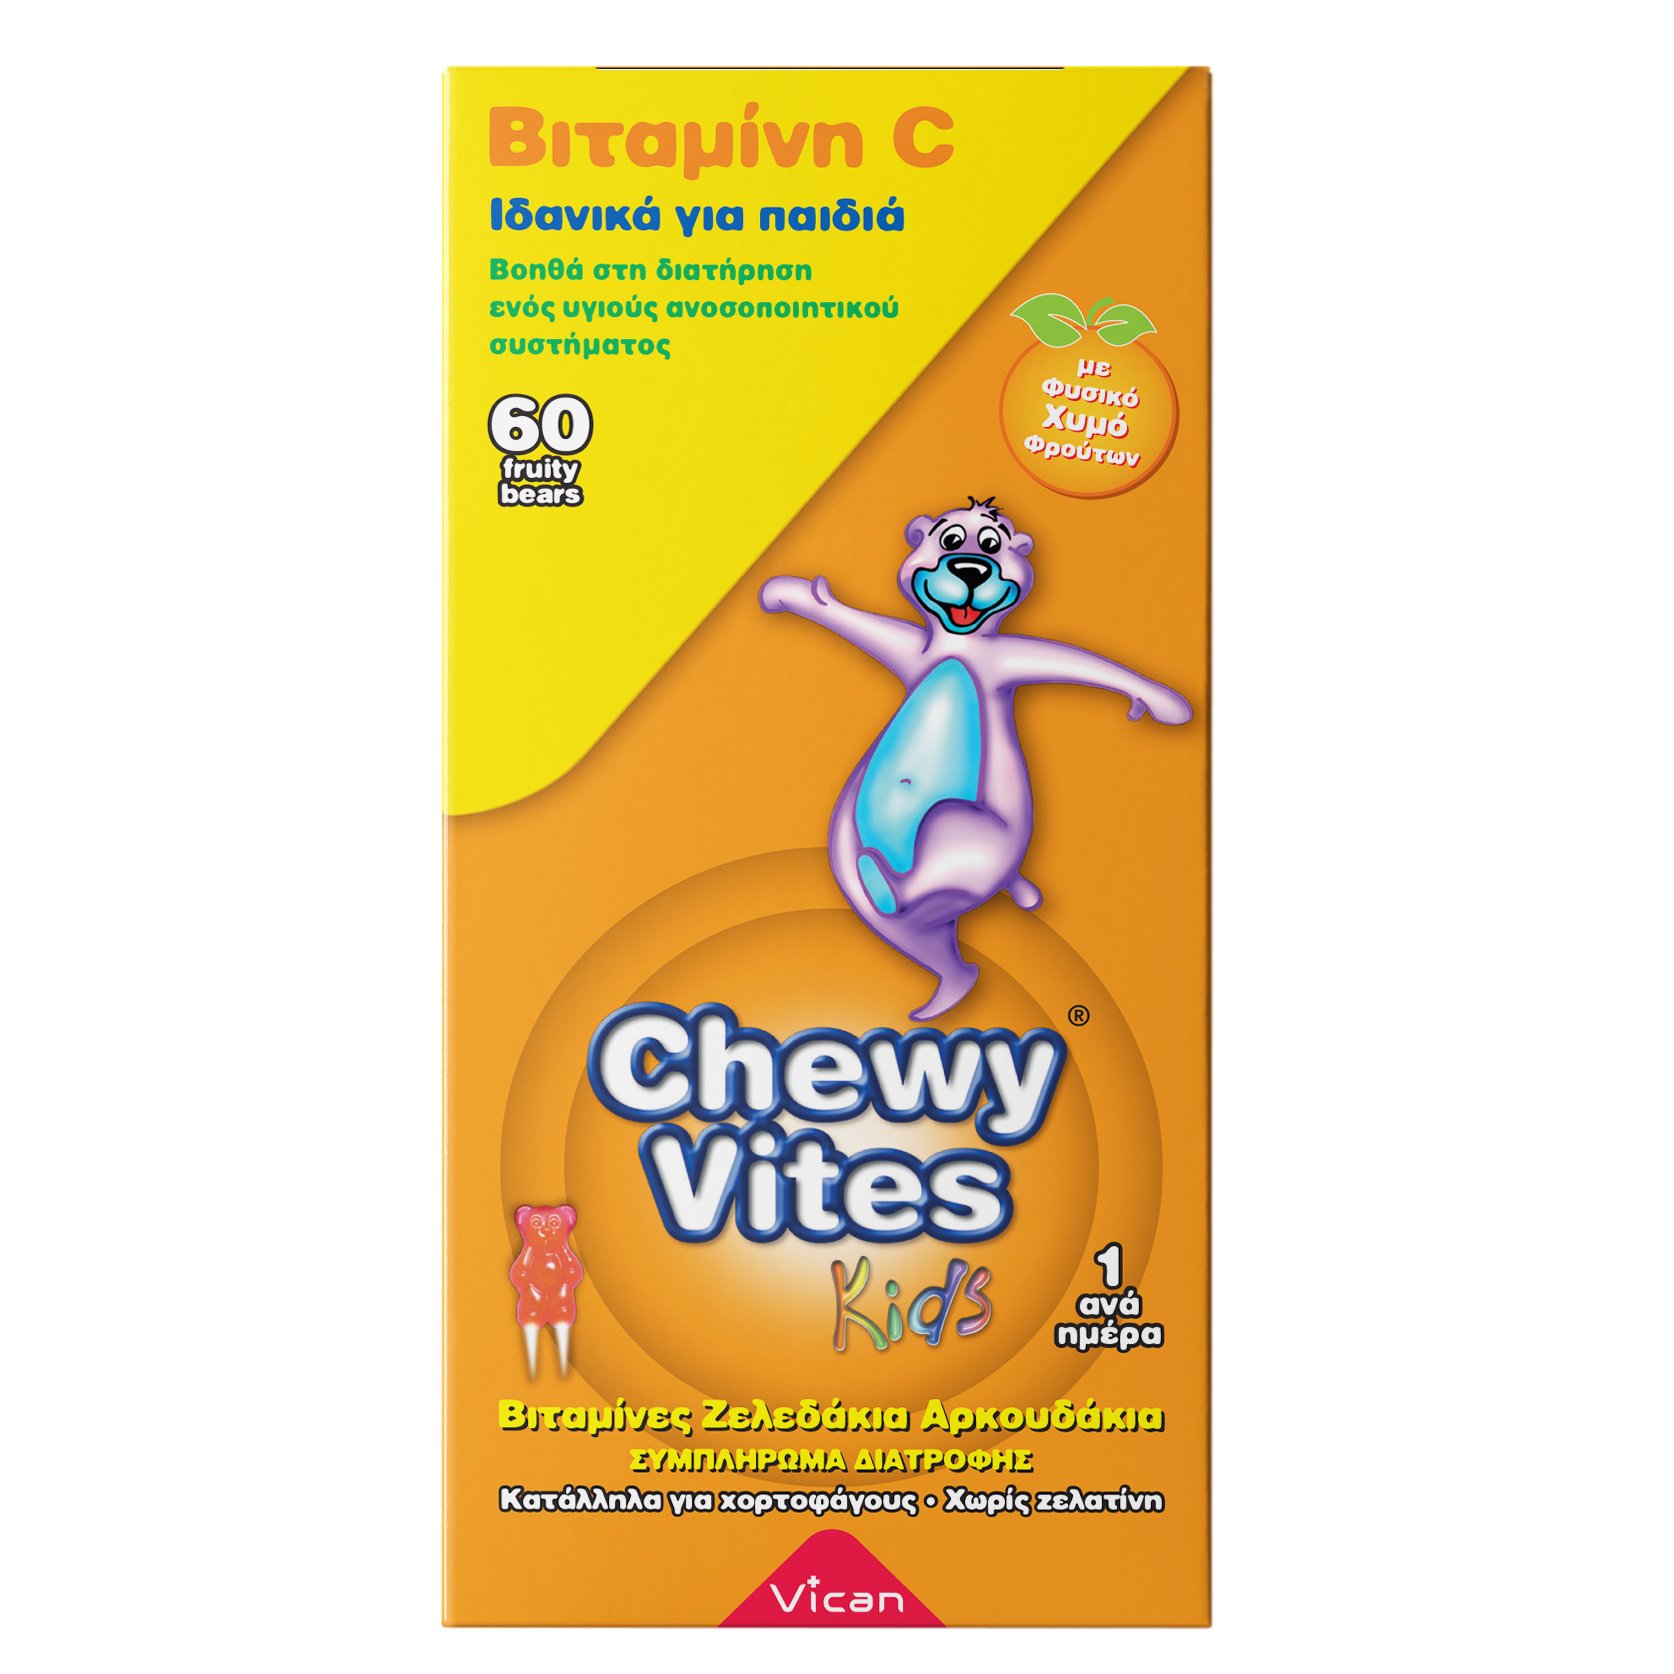 Chewy Vites Vitamin C Ζελεδάκια για Παιδιά, Βοηθά στη Διατήρηση Ενός Υγιούς Ανοσοποιητικού Συστήματος 60Bears Chews 6212C